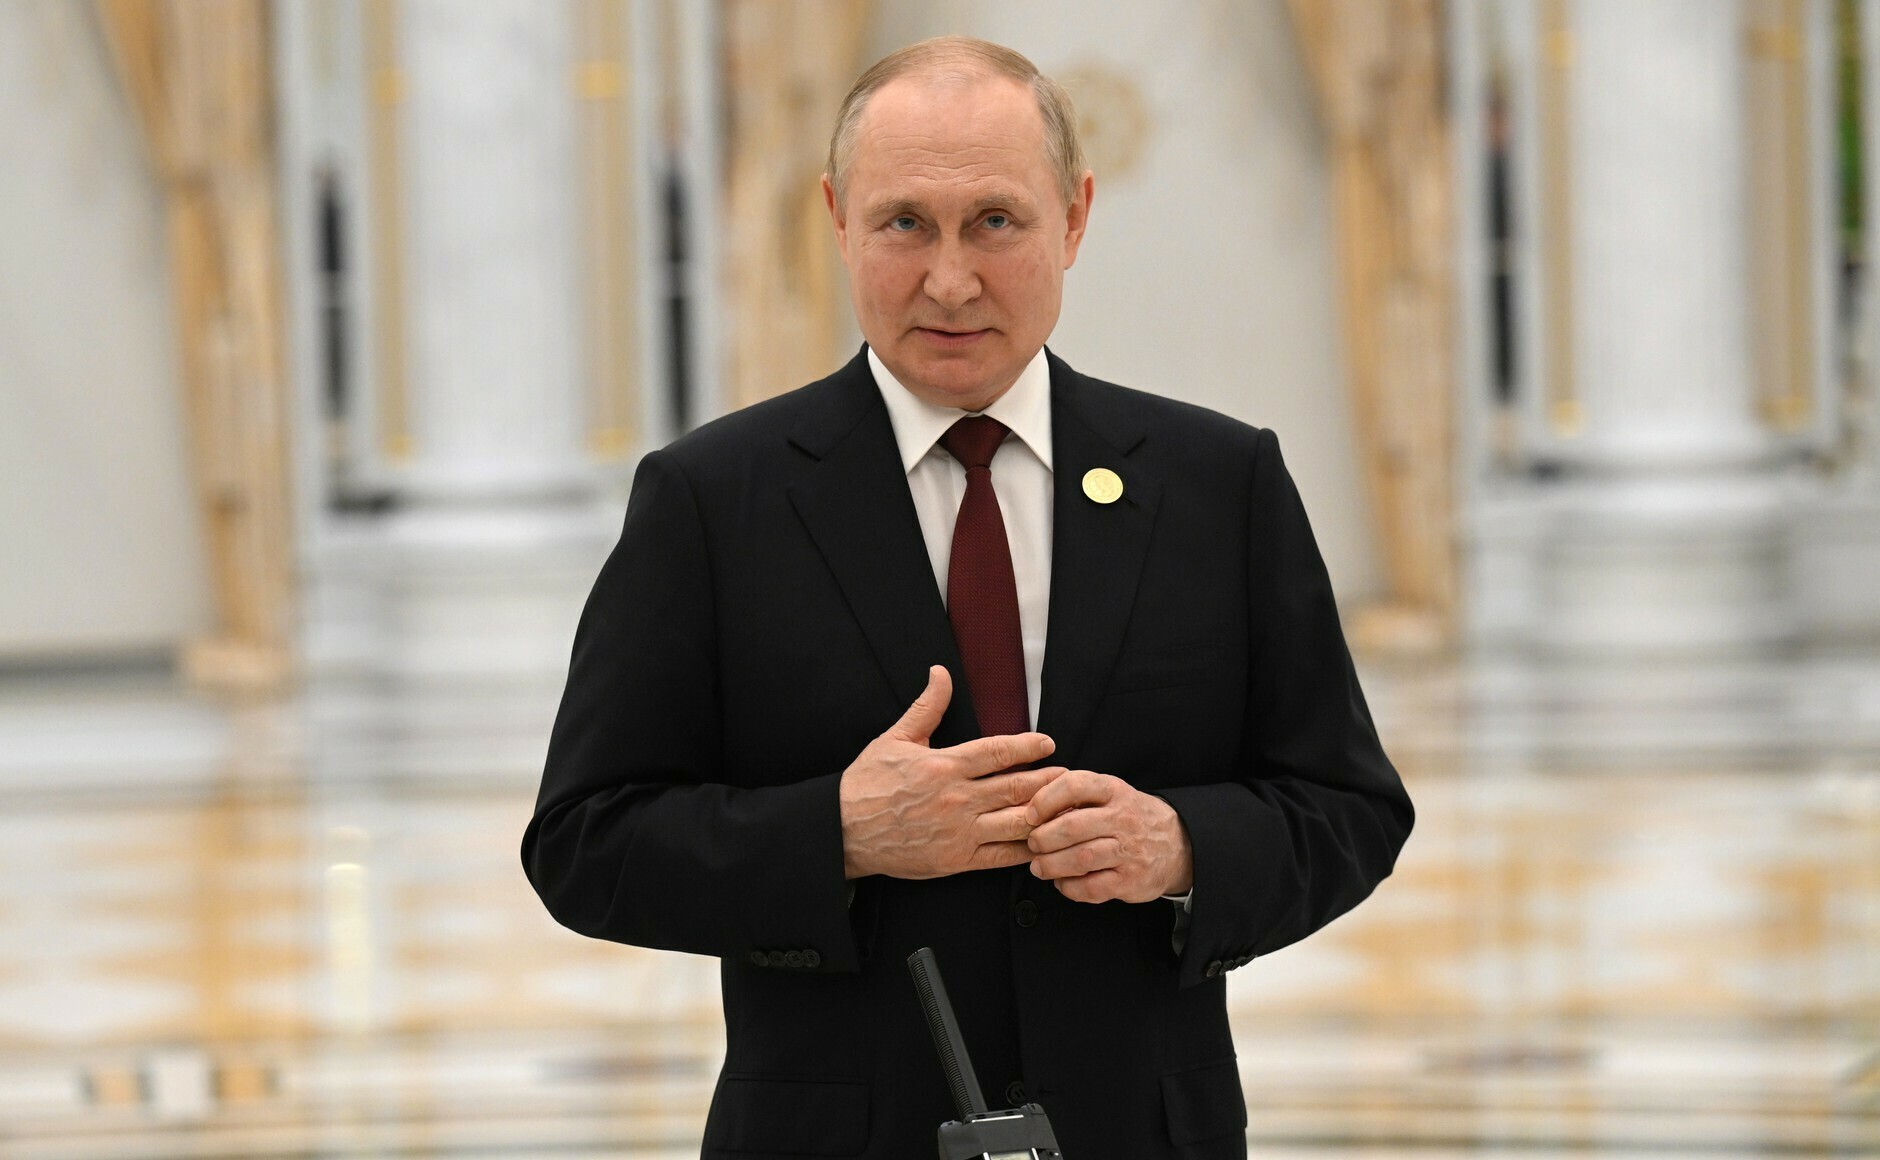 Путин примет участие в церемонии открытия форума "Армия-2022" 15 августа